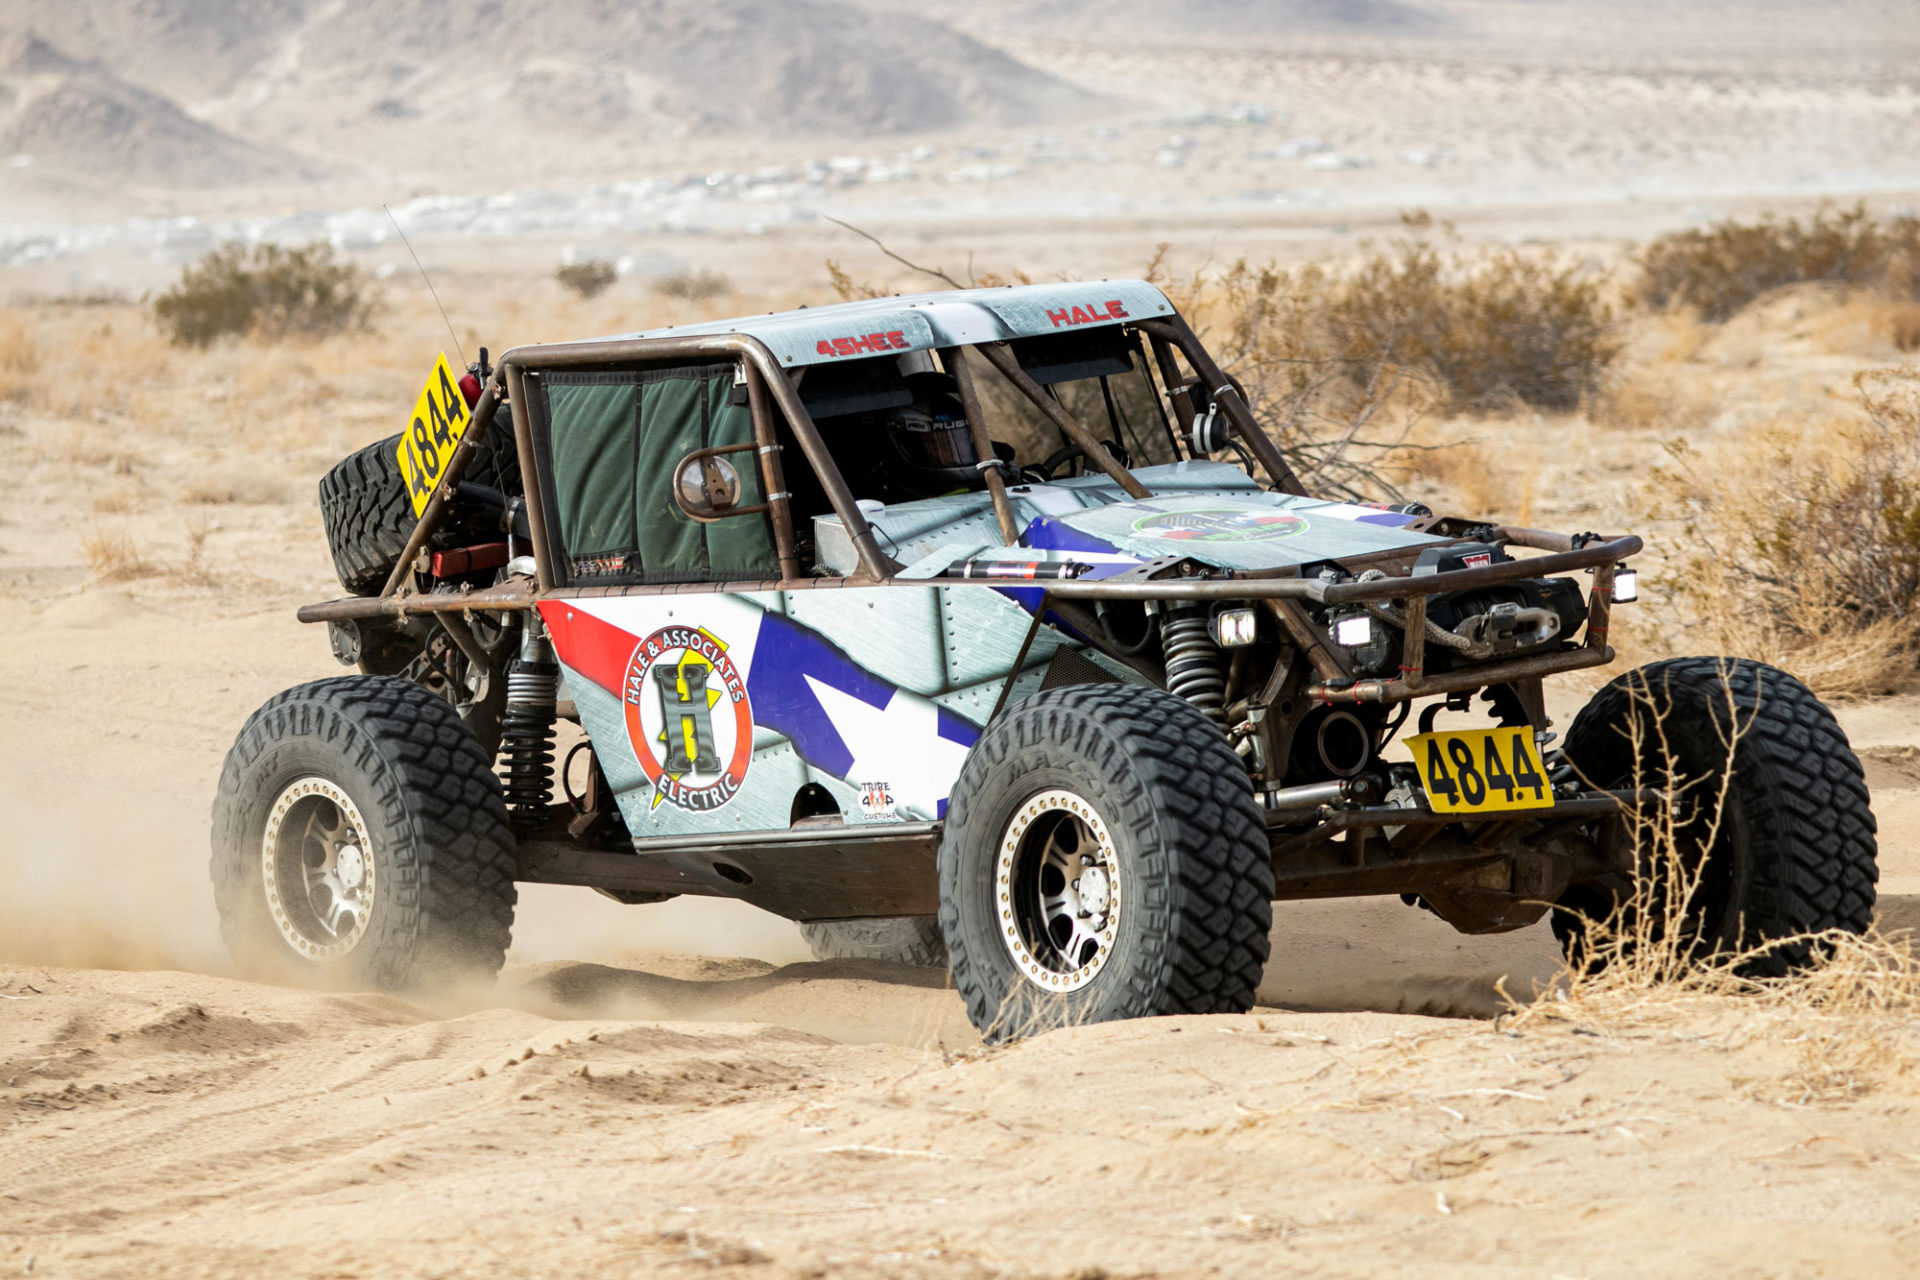 Truck racing in the desert